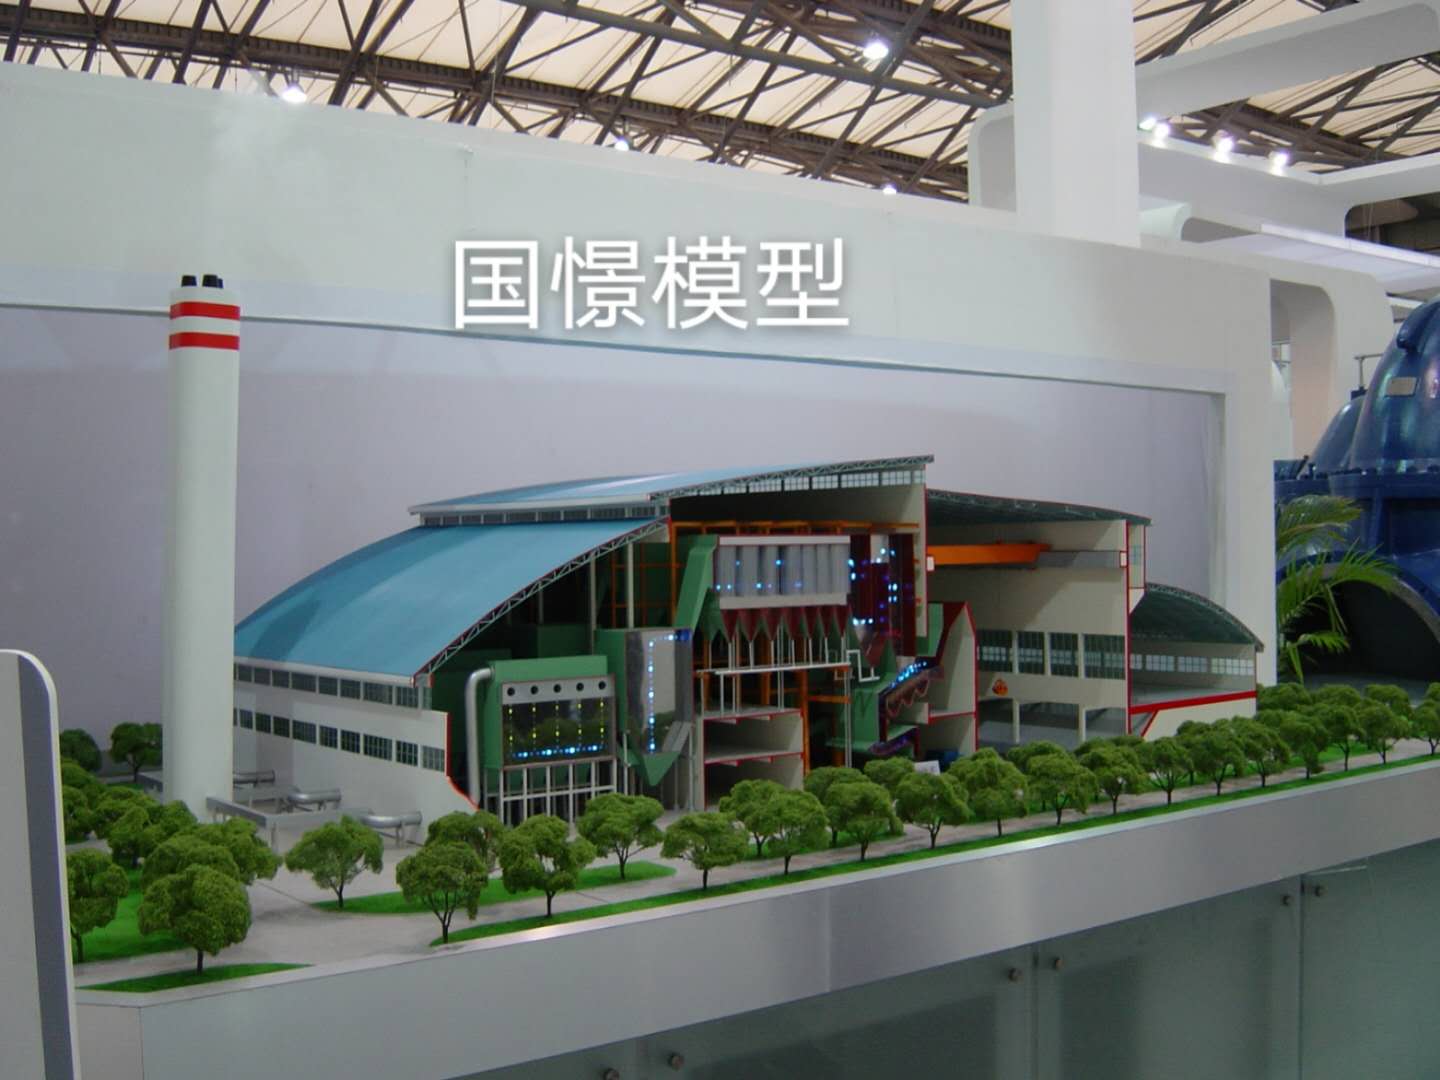 青县工业模型